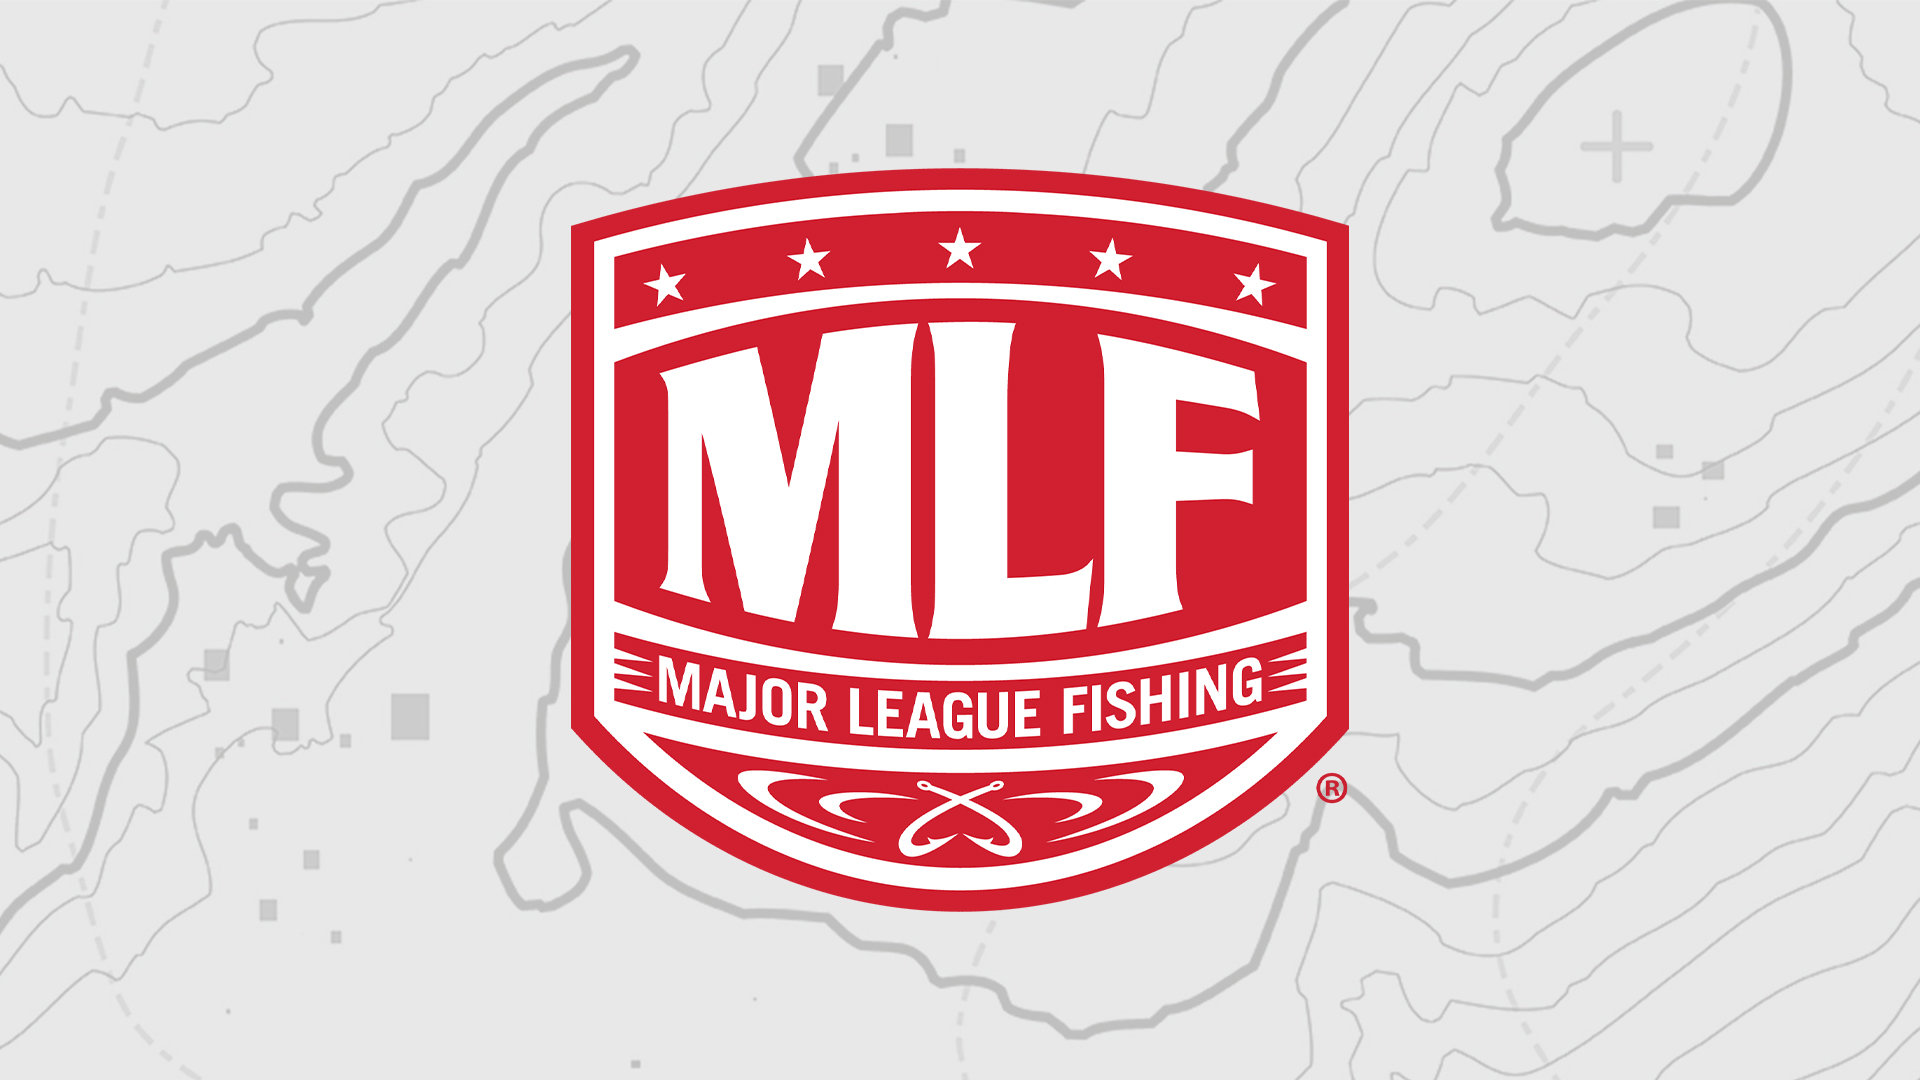 Major League Fishing - Major League Fishing